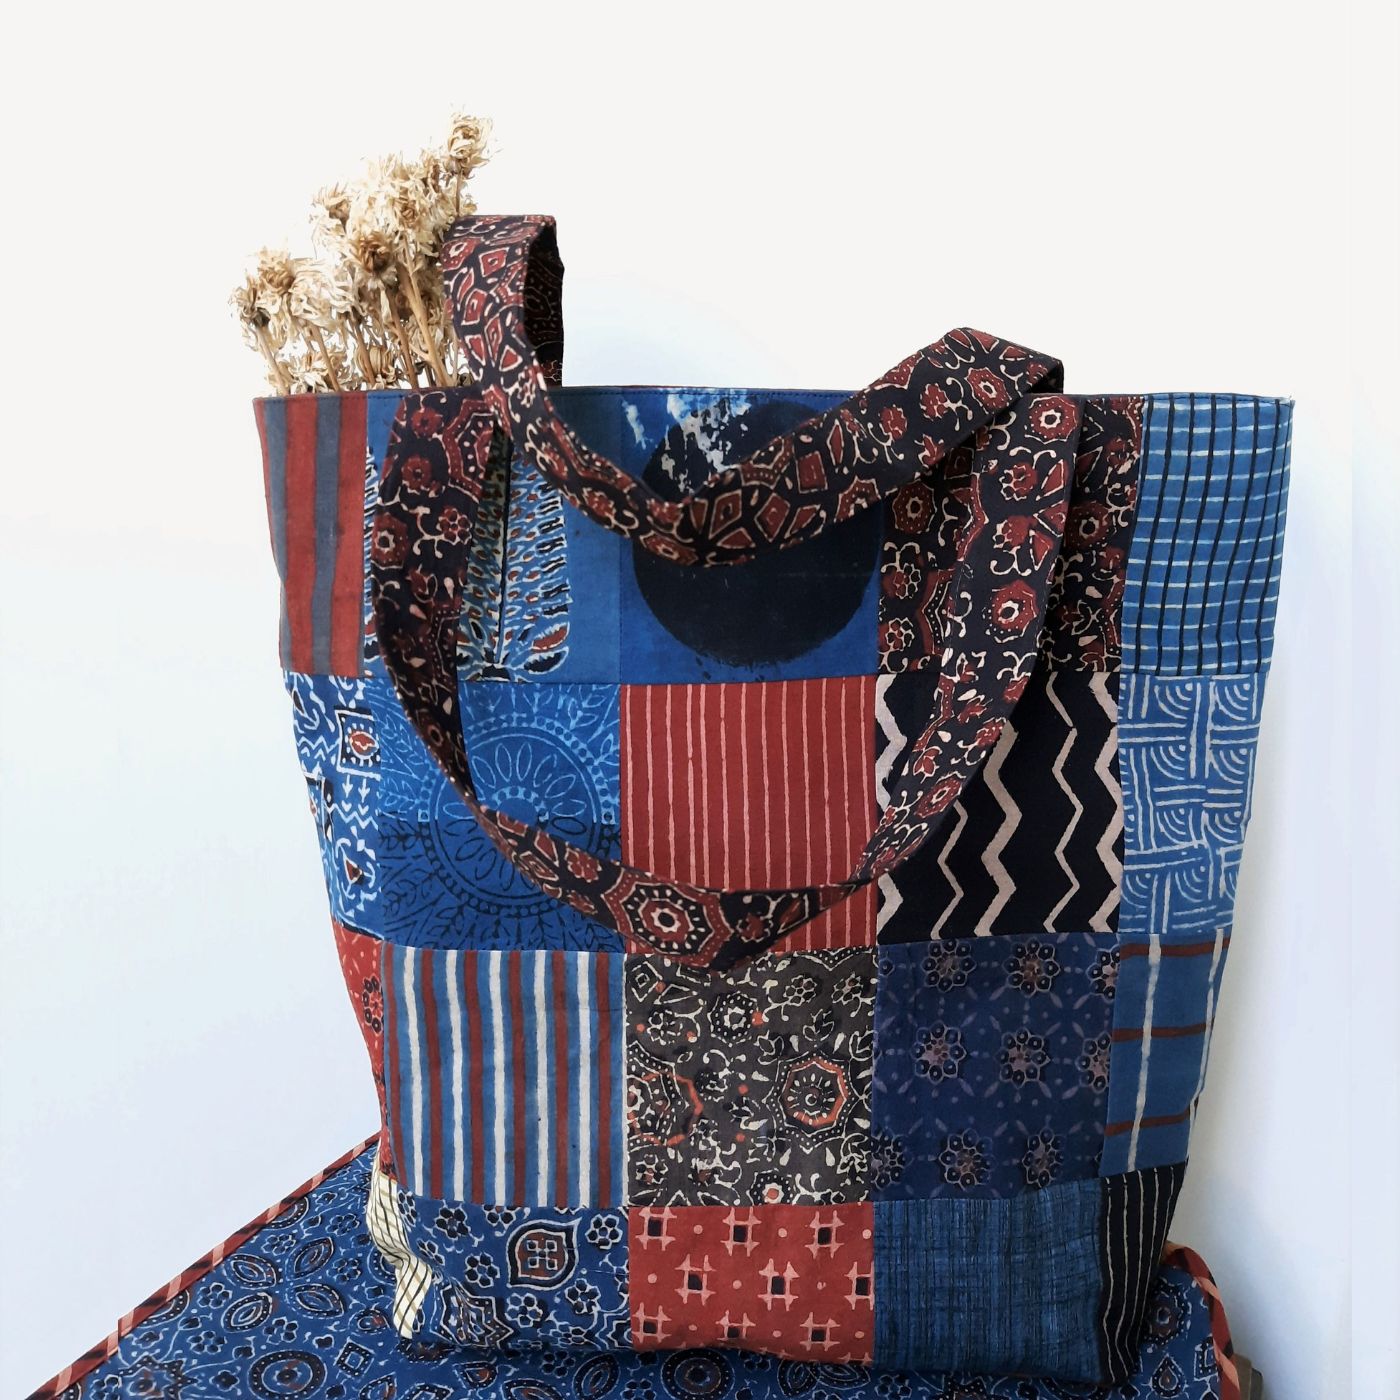 Atenti Bags – The Yarn Club, Inc